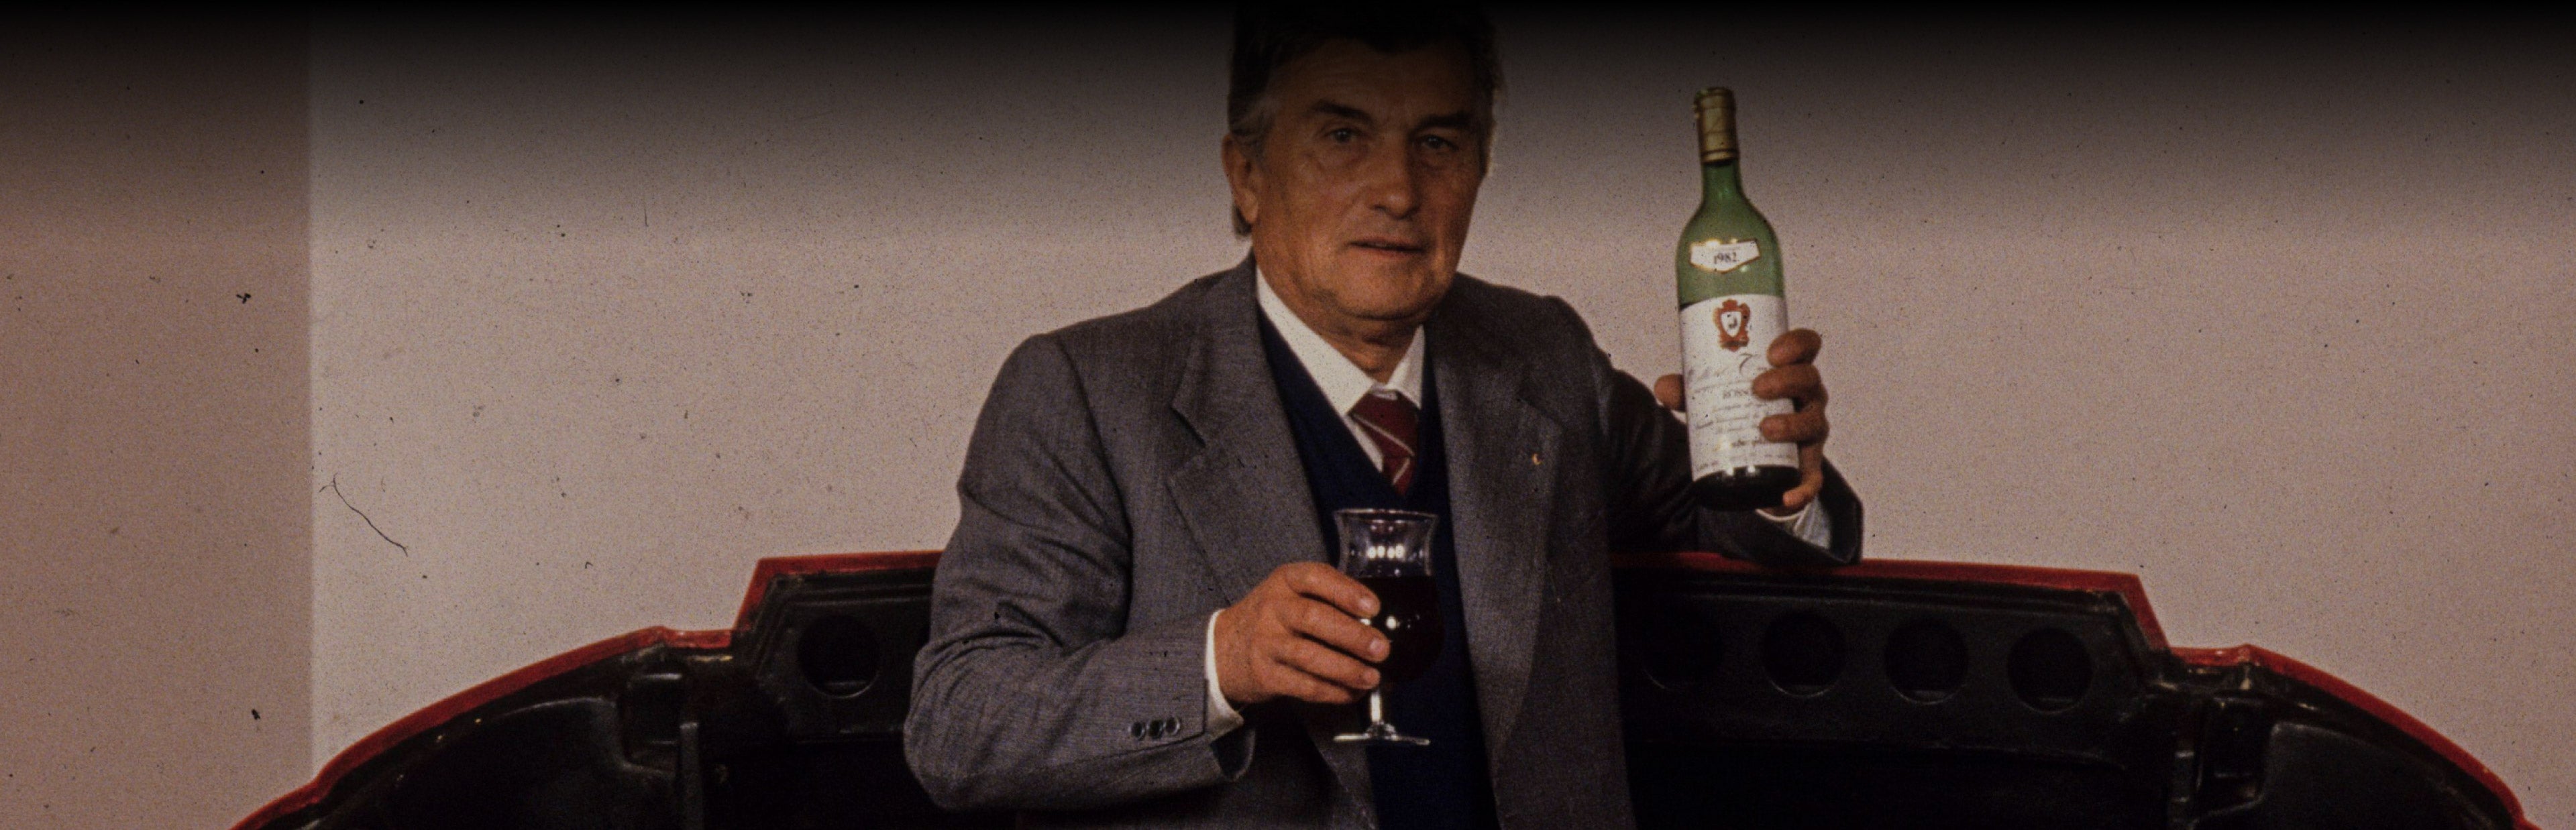 Ferruccio Lamborghini holding a bottle of wine and a glass